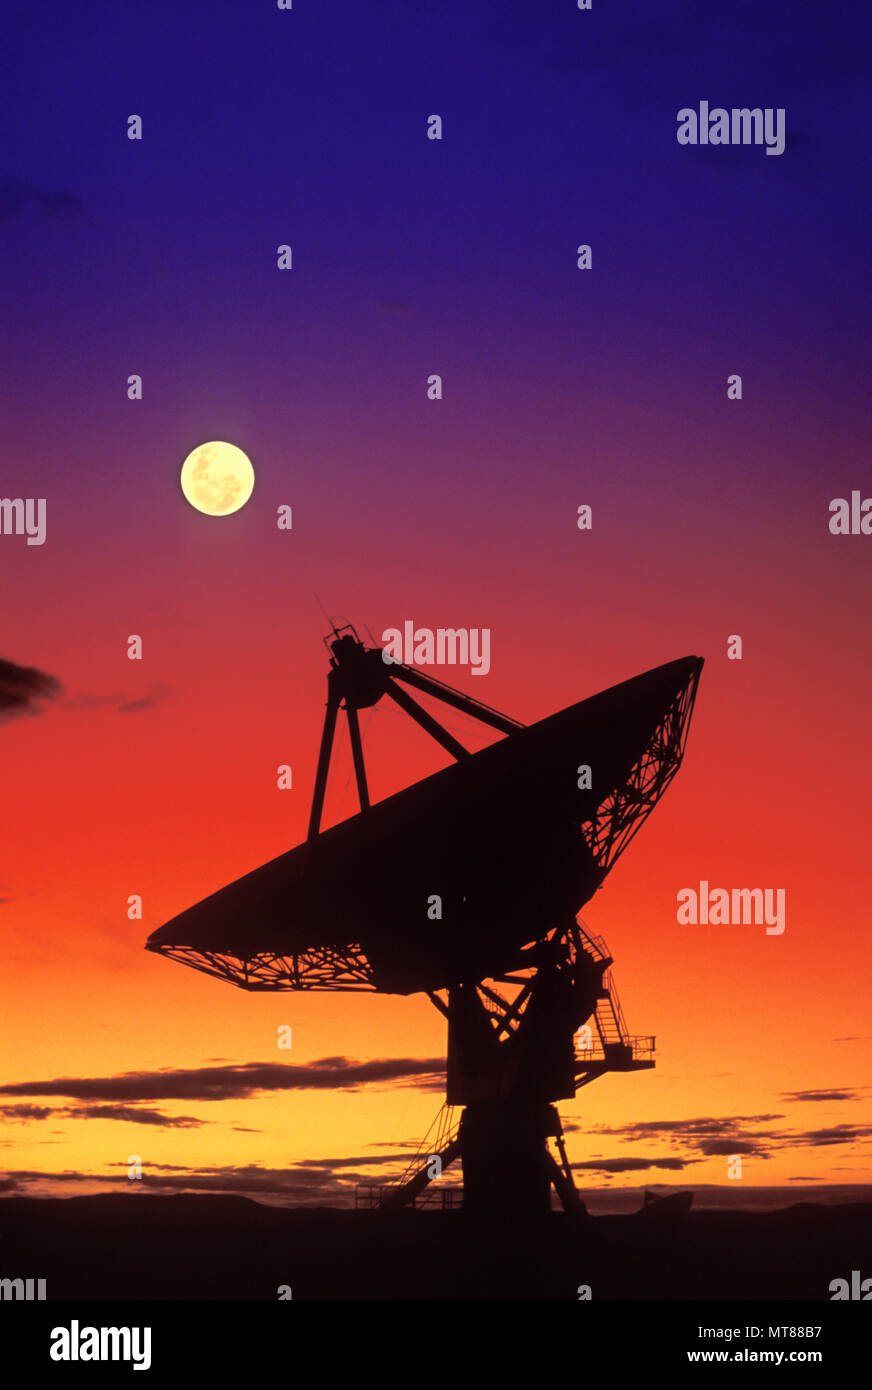 1990 HISTORICAL RADIO TELESCOPE SATELLITE DISH SAN AUGUSTINE PLAIN NEW MEXICO USA Stock Photo